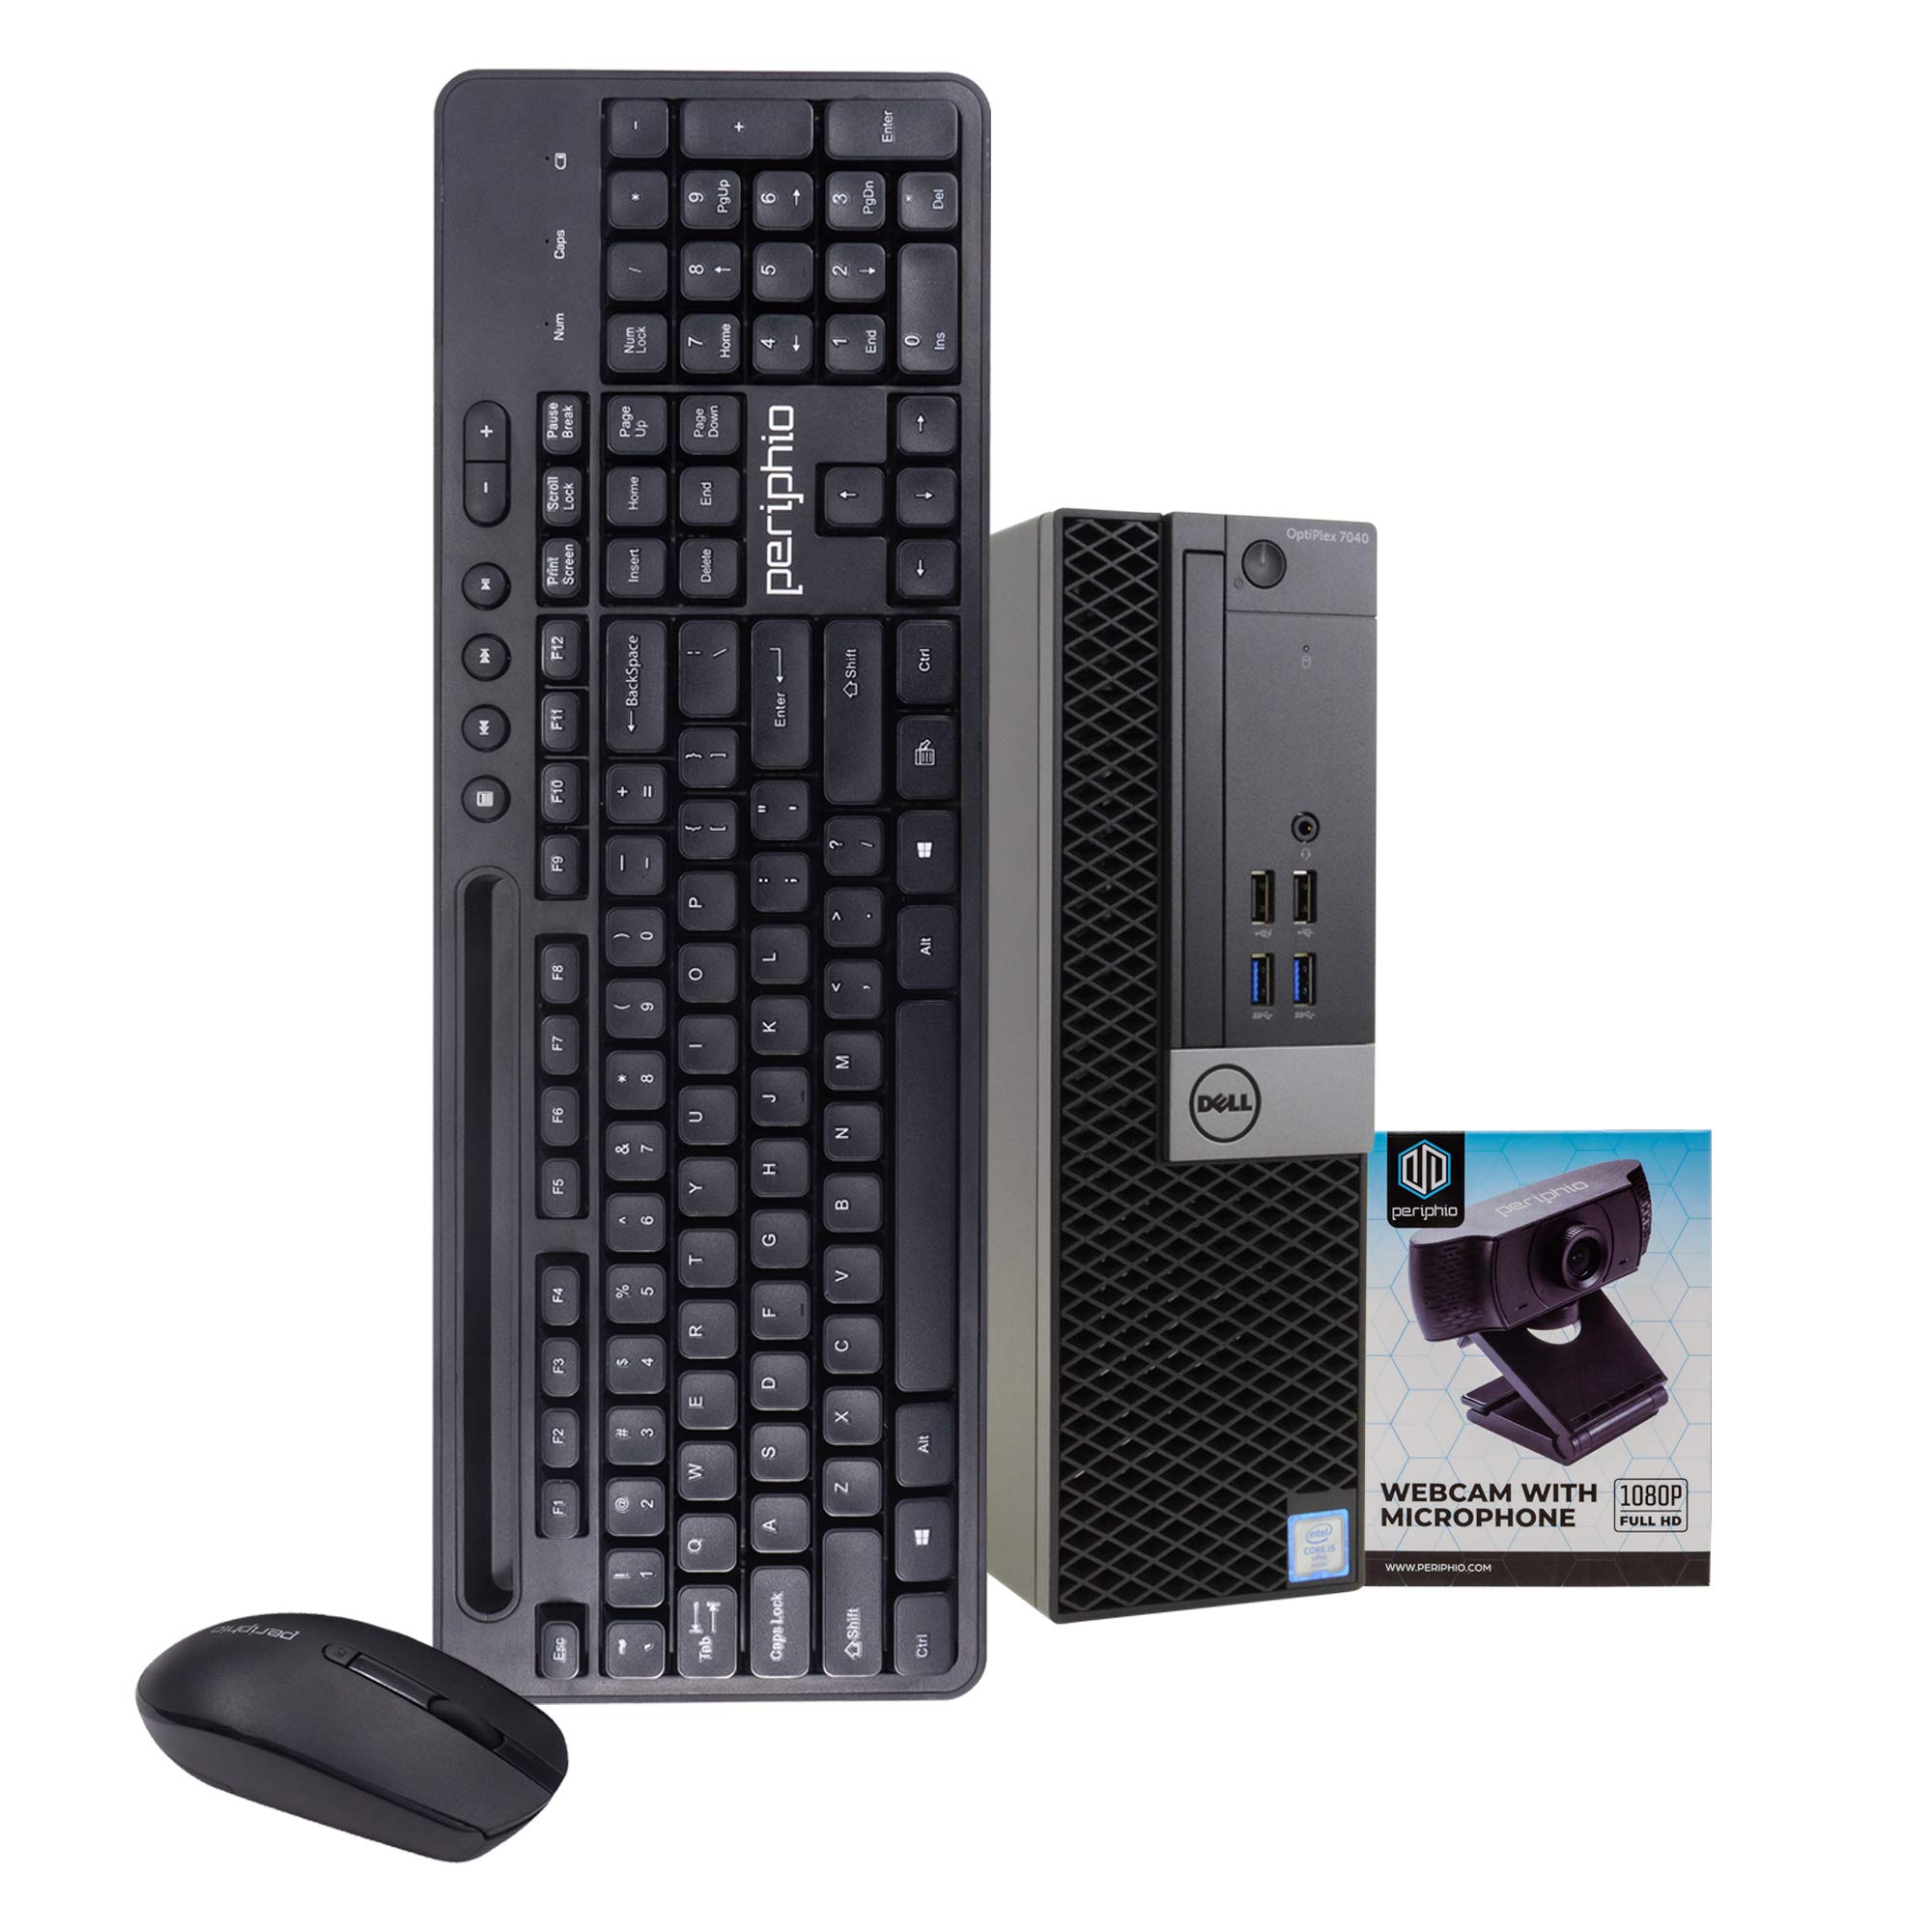 Dell OptiPlex 7040 PC Desktop Computer, Intel i5-6500, 16GB RAM, 512GB SSD, Windows 10 Pro, New 1080p Webcam, New Wireless Keyboard & Mouse, New 16GB Flash Drive, WiFi (Renewed)